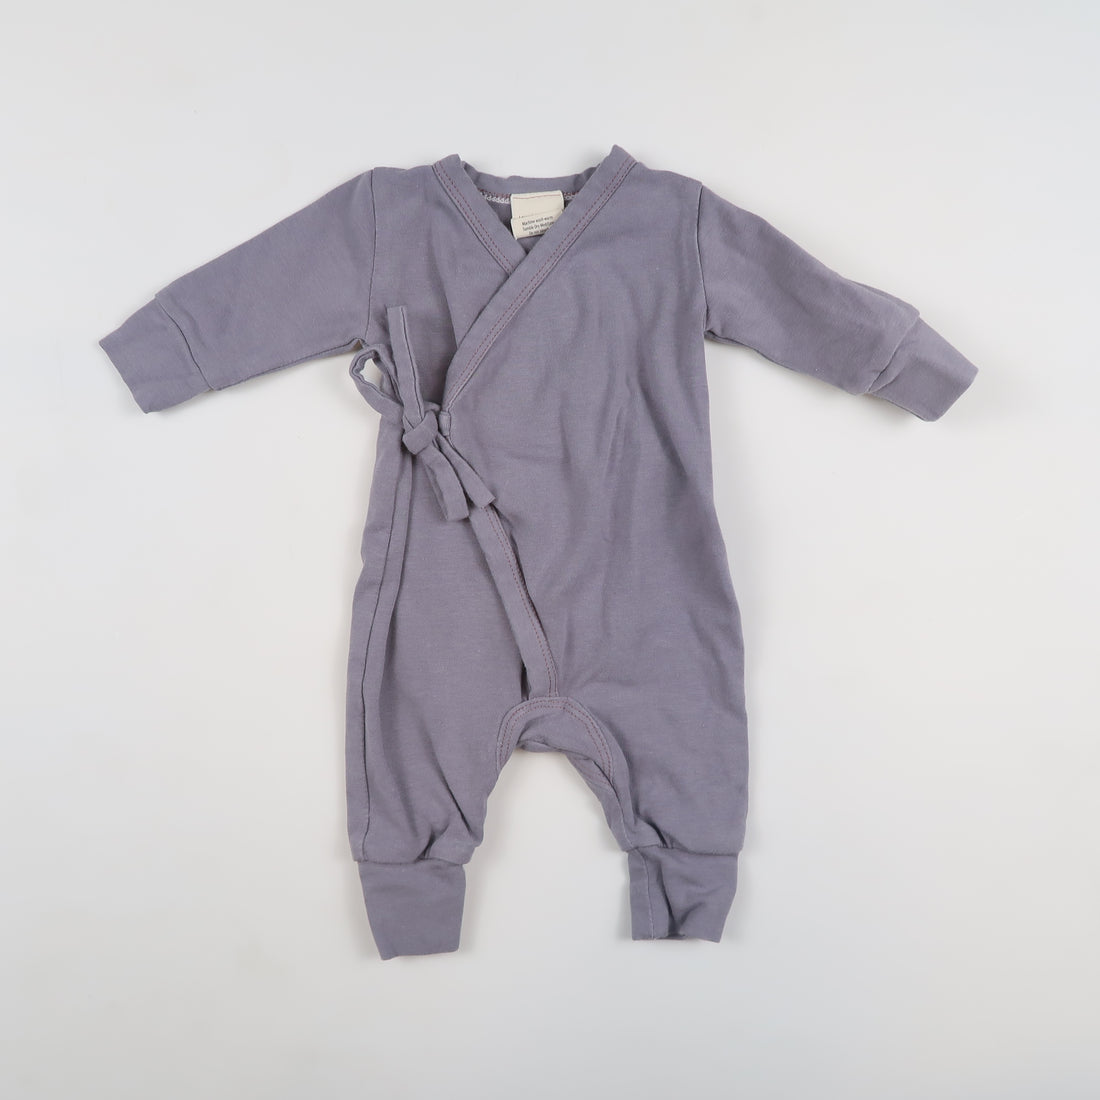 Lavender Moon Kids - Sleepwear (Preemie)